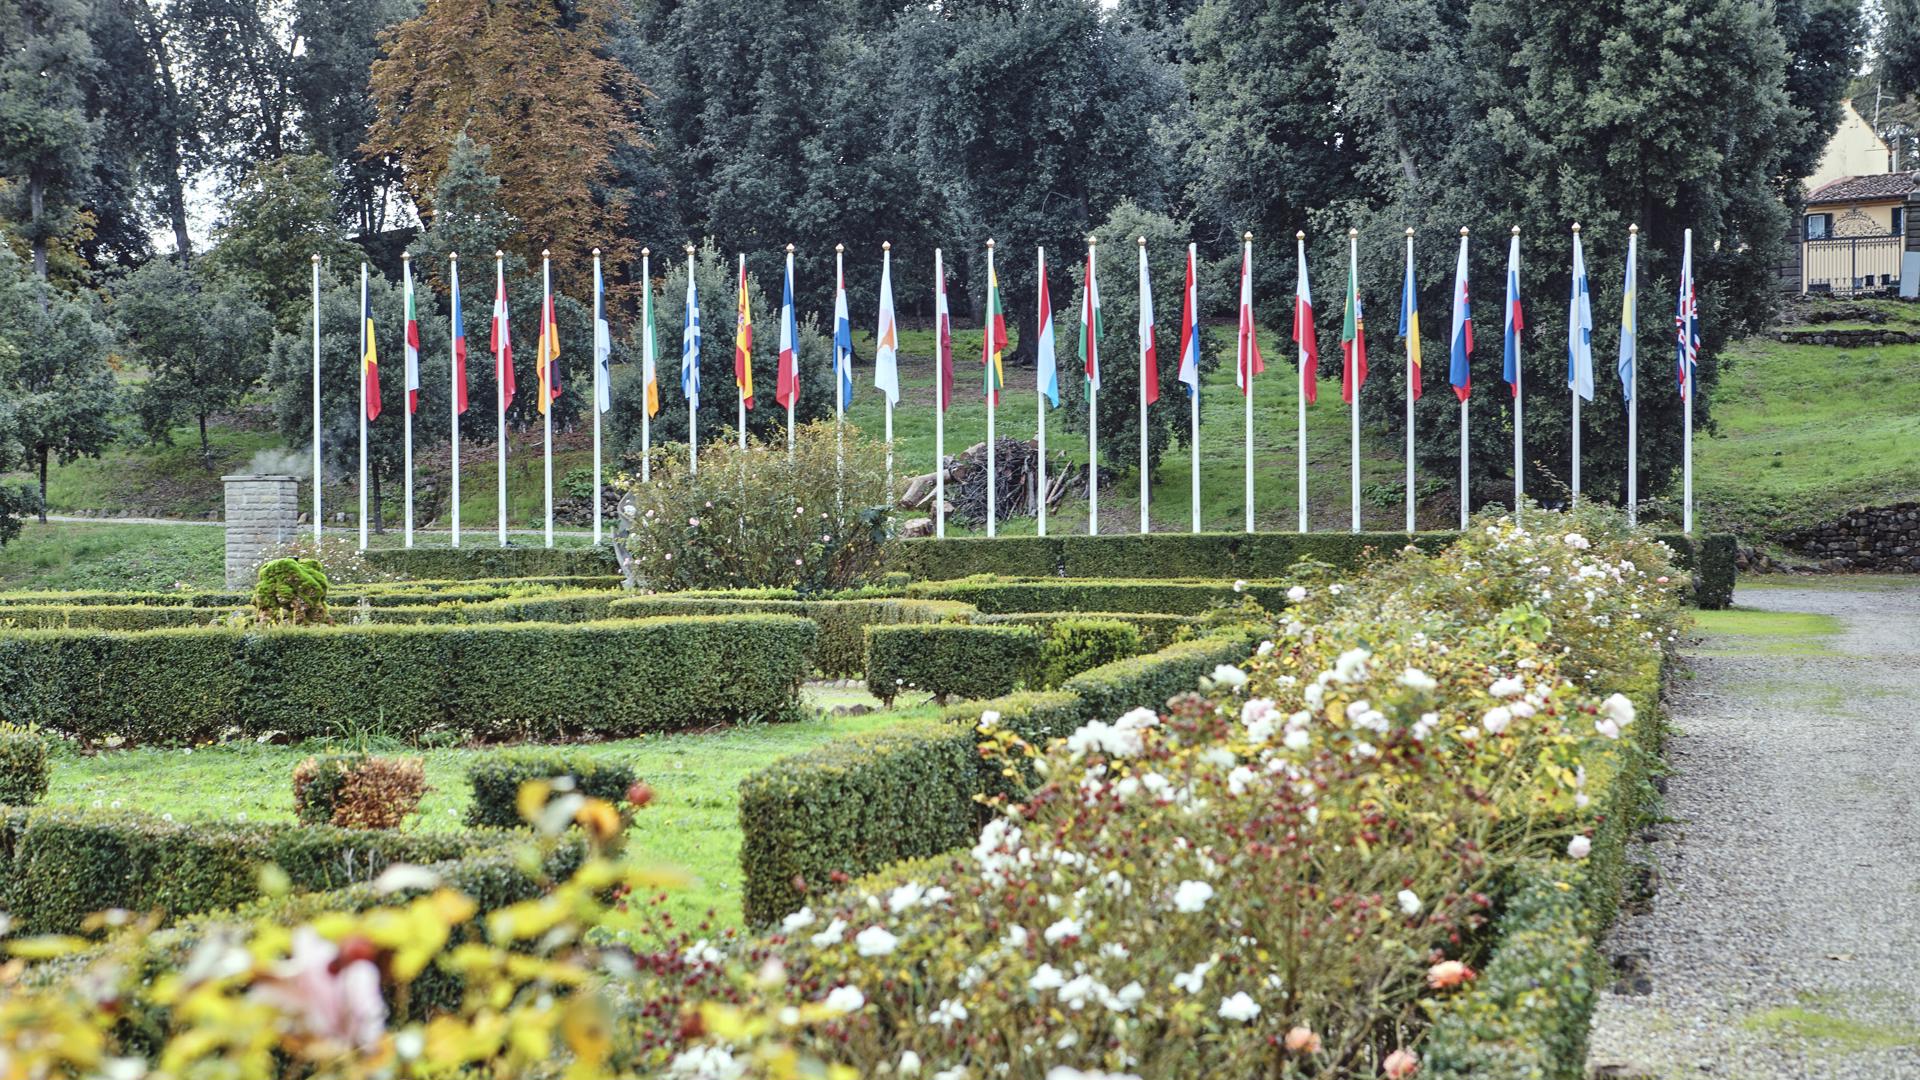 Villa Salviati garden flags